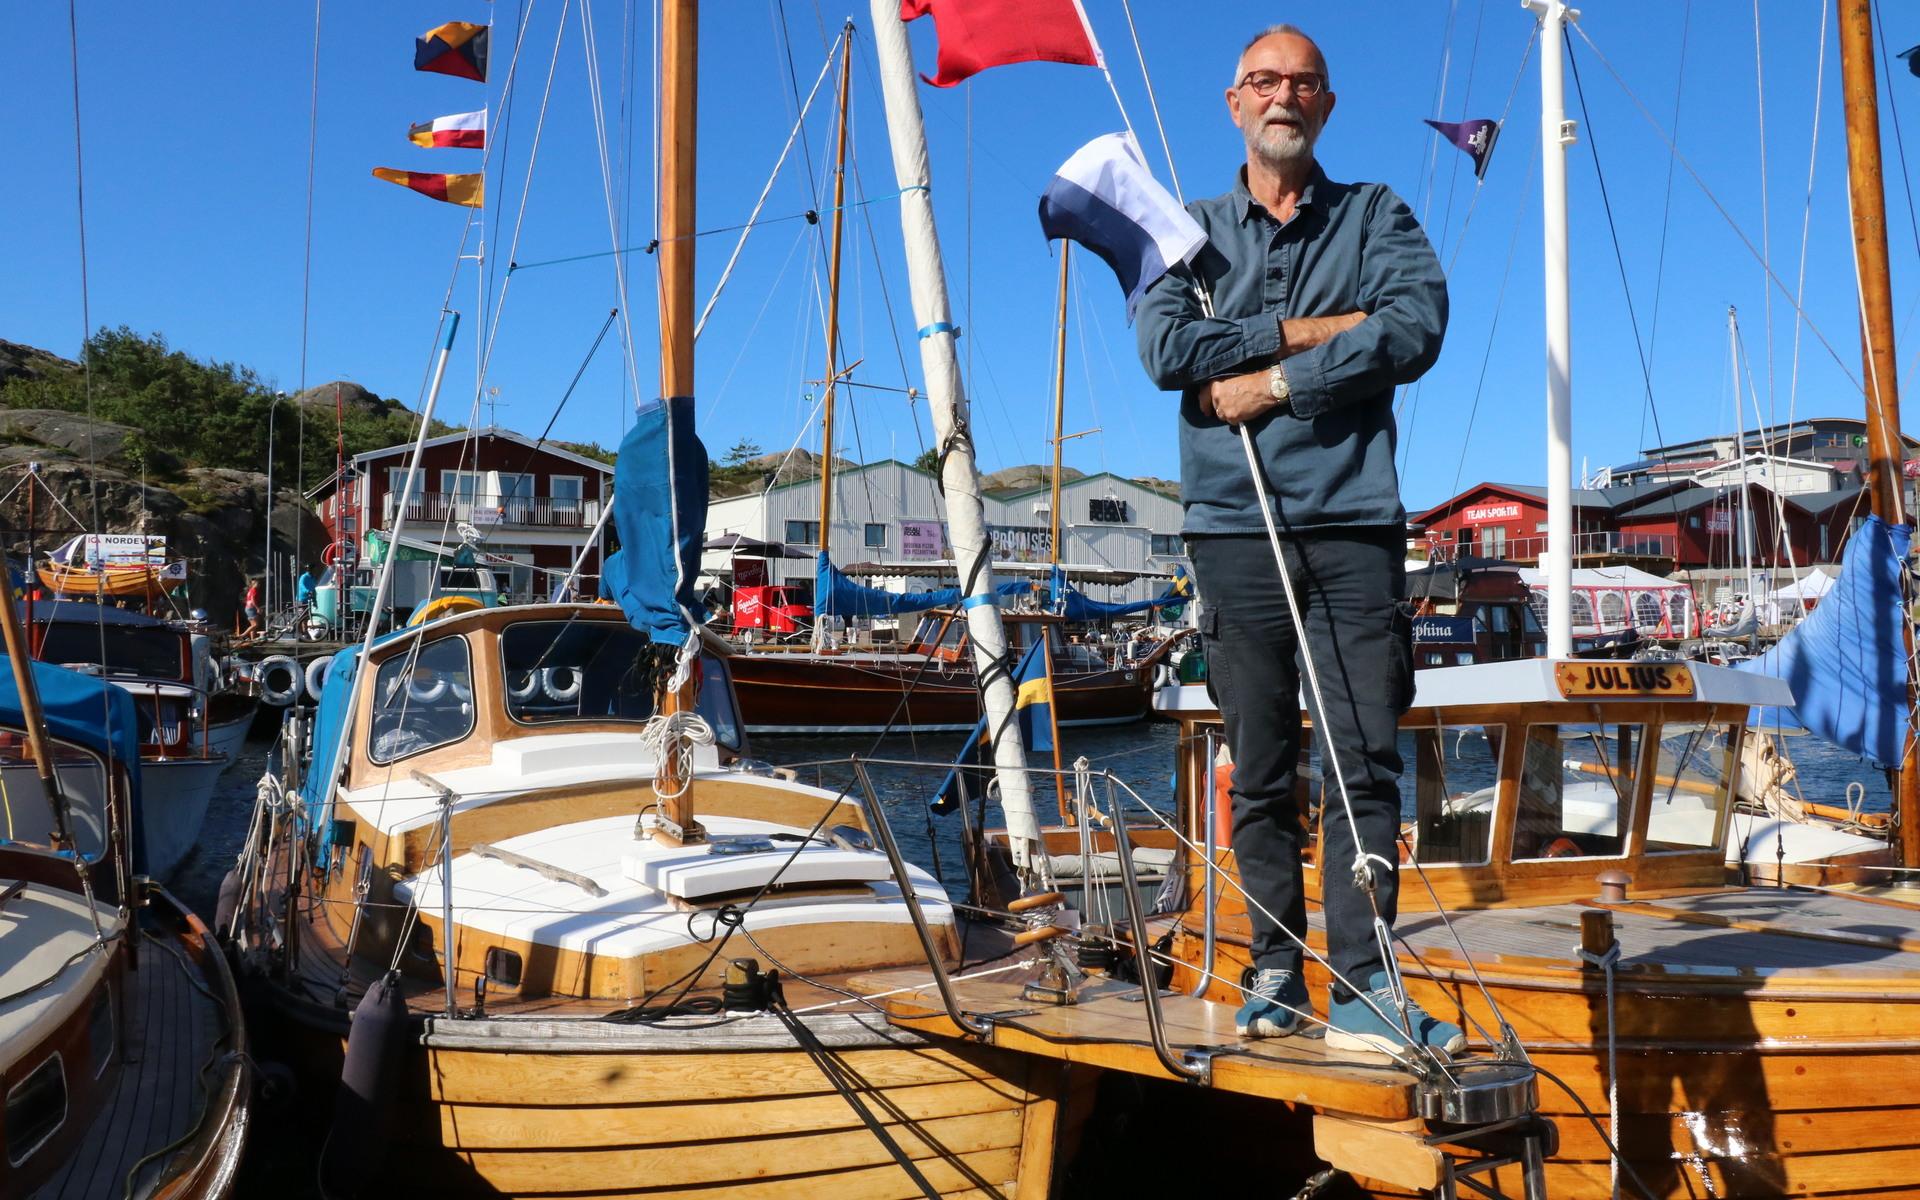 Bengt Alvén från Orust har medverkat vid träbåtsfestivalen flera gånger tidigare, med sin Hulda som är byggd 1970 i Kungsviken. 